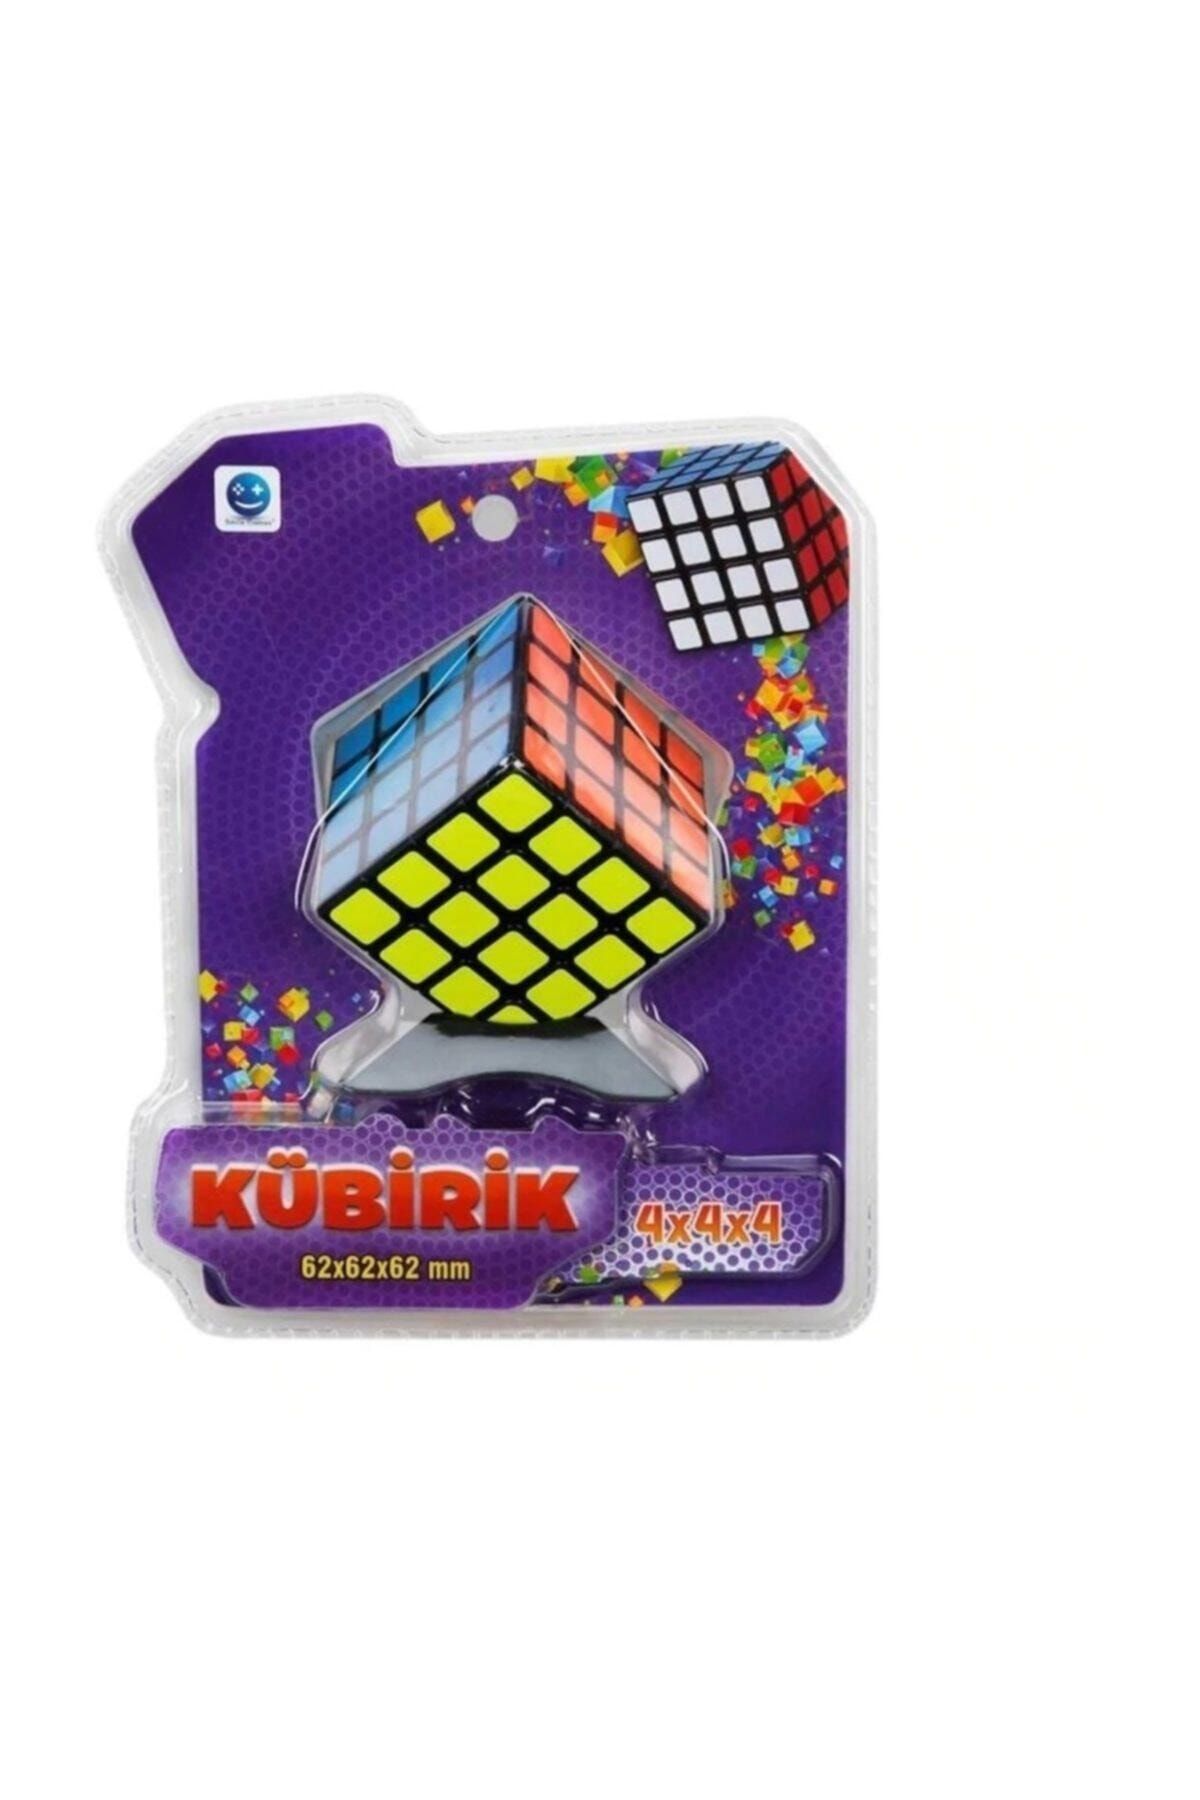 Sunman Kübirik 4'lü Zeka Küpü Magic Cube Sabır Küp 4x4x4